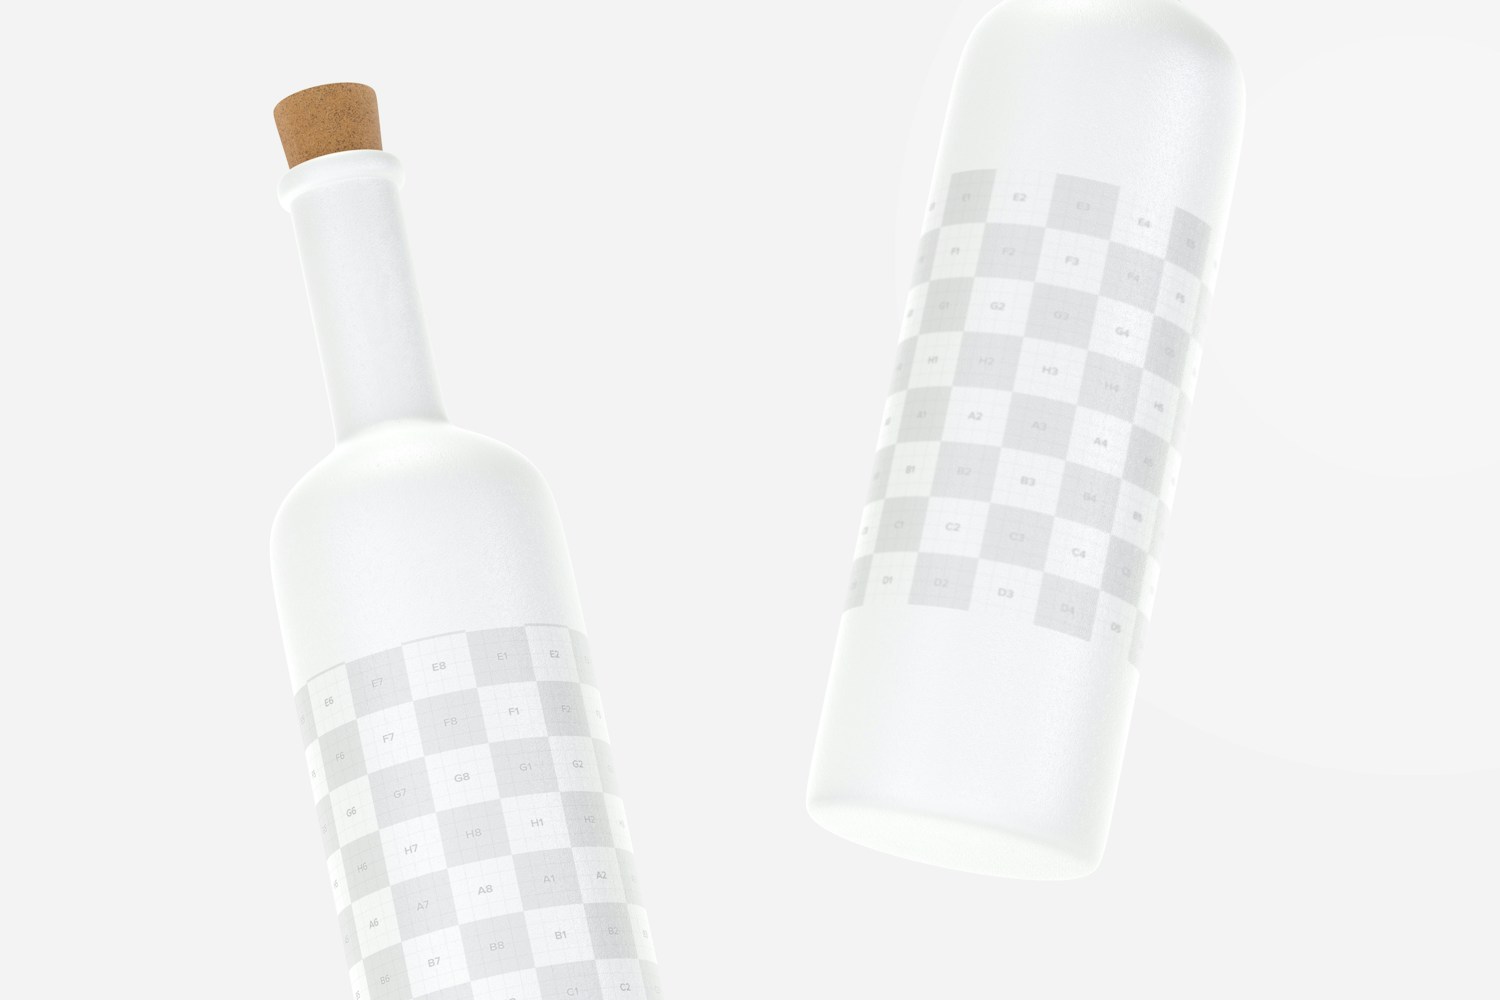 Long Neck Ceramic Bottles with Cork Mockup, Floating